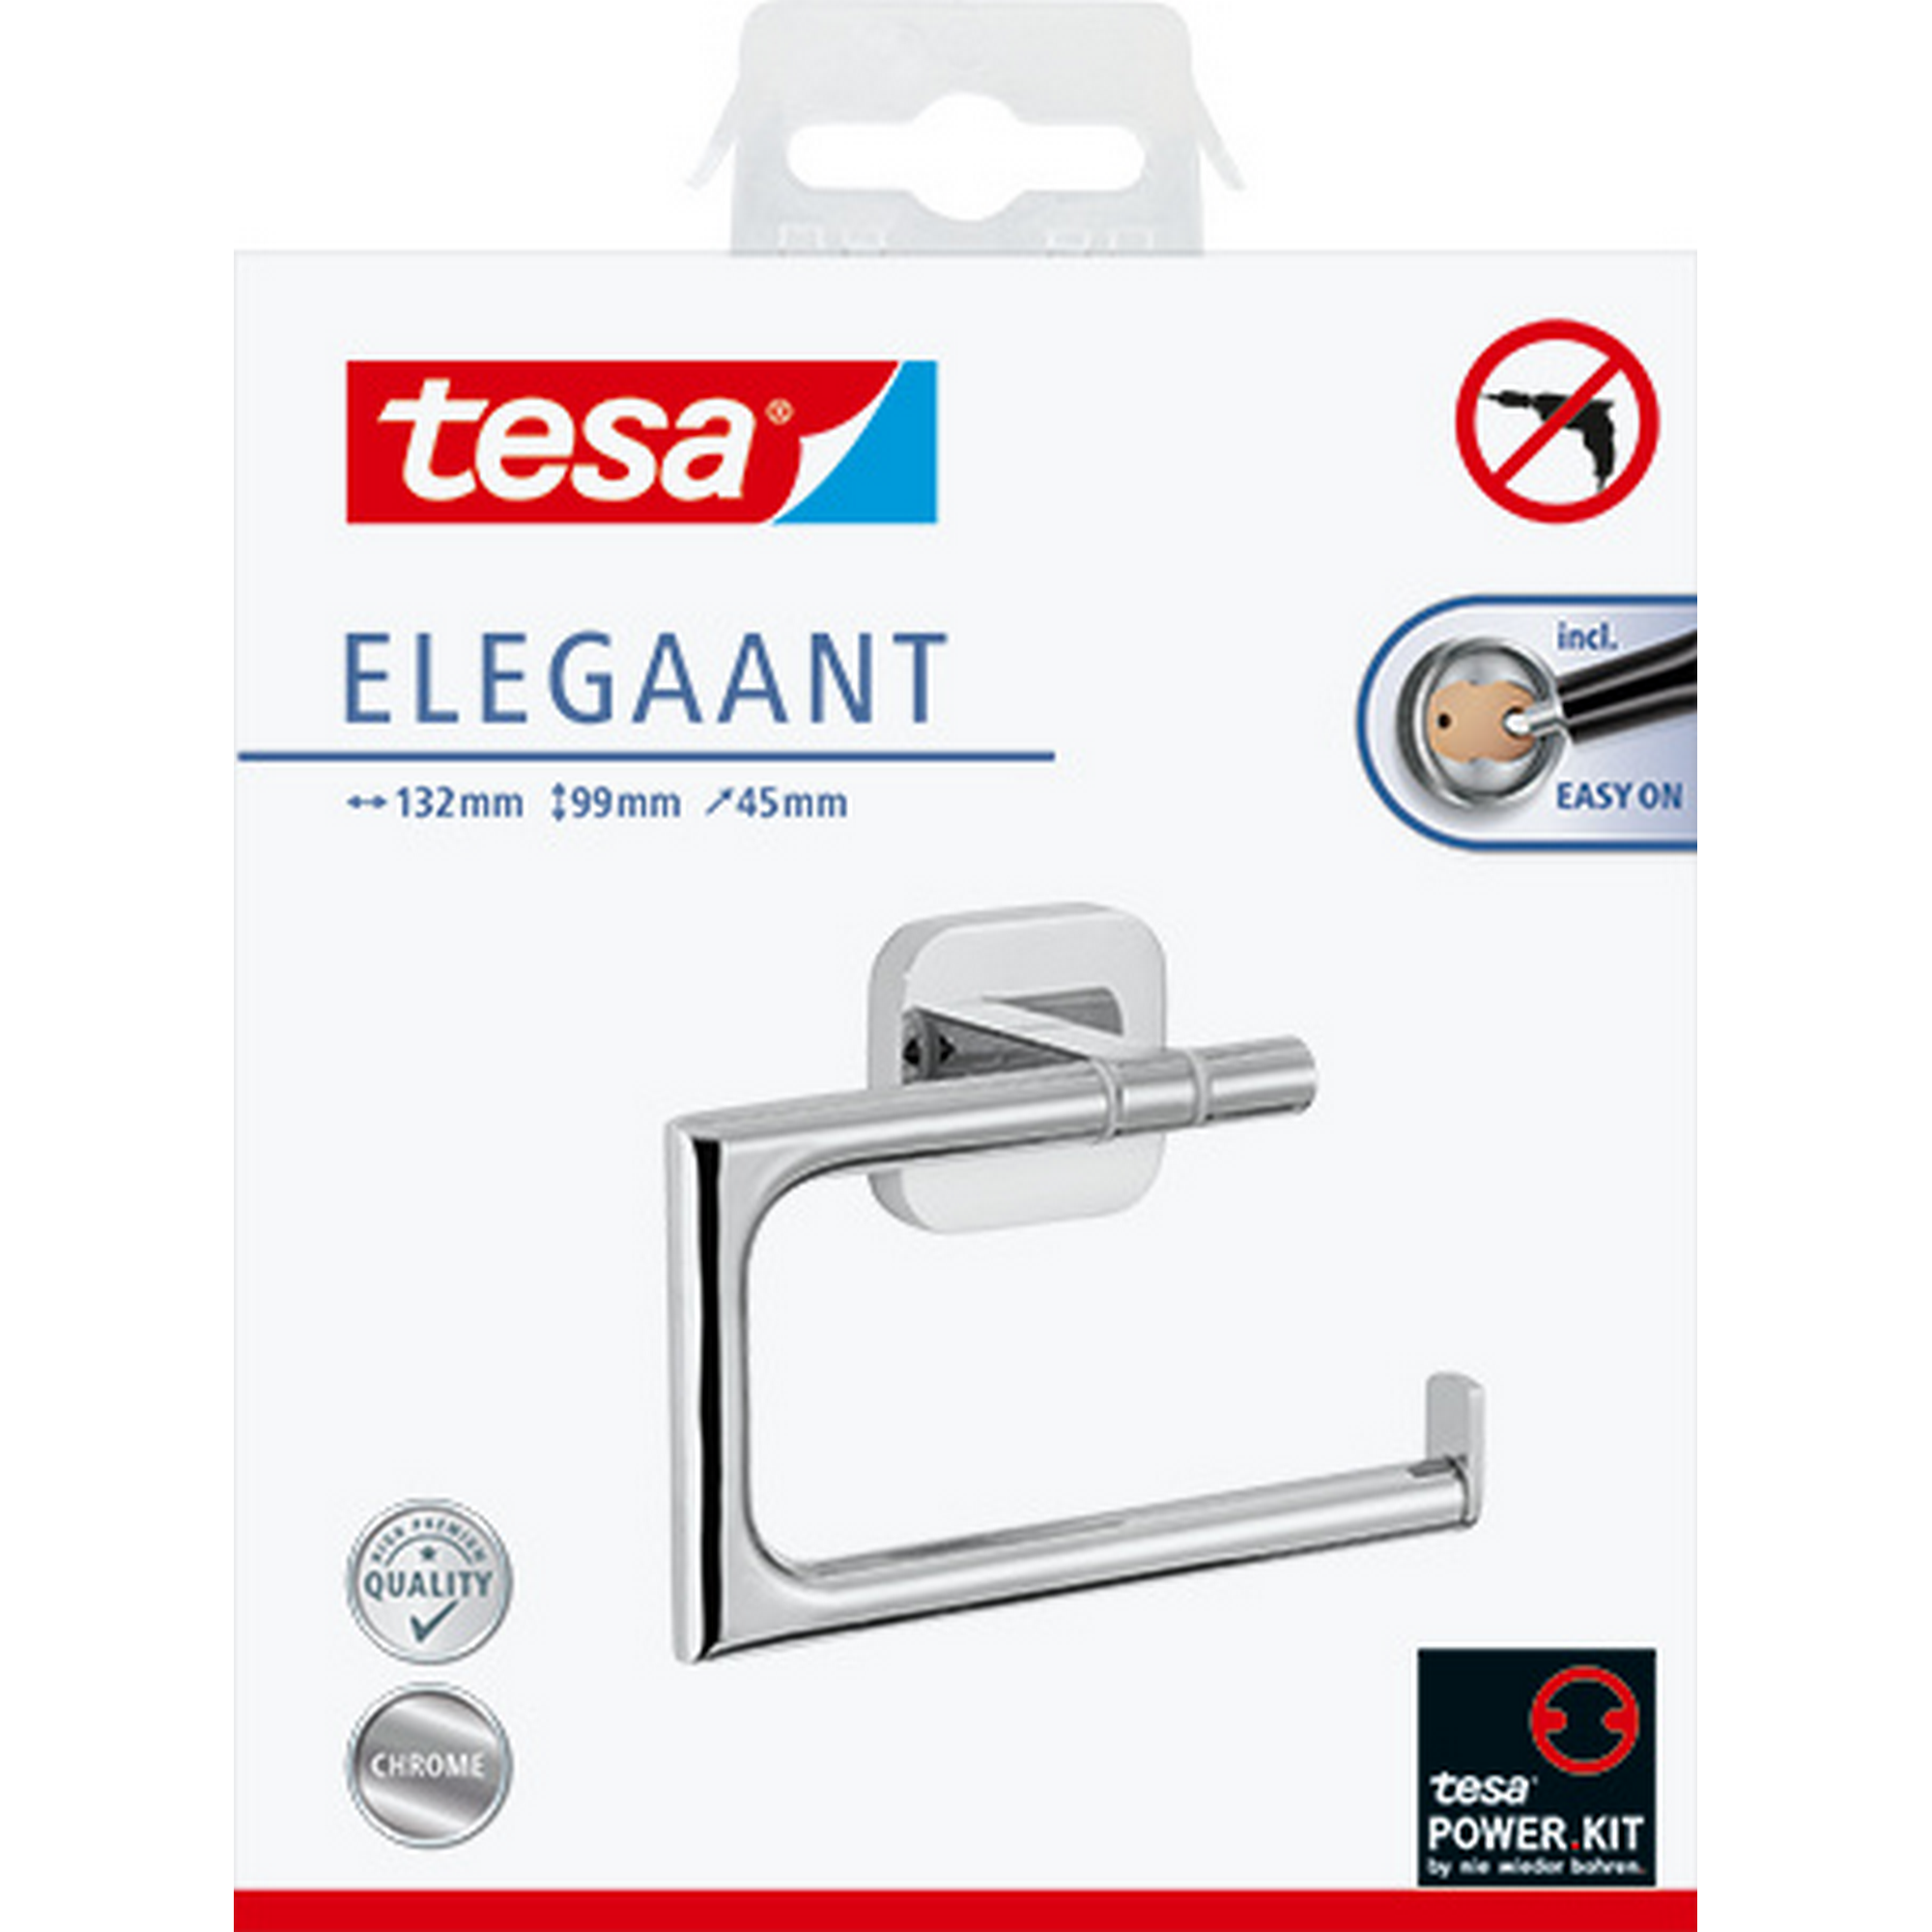 Toilettenpapierhalter 'Elegaant' Metall verchromt ohne Deckel, mit Klebelösung + product picture